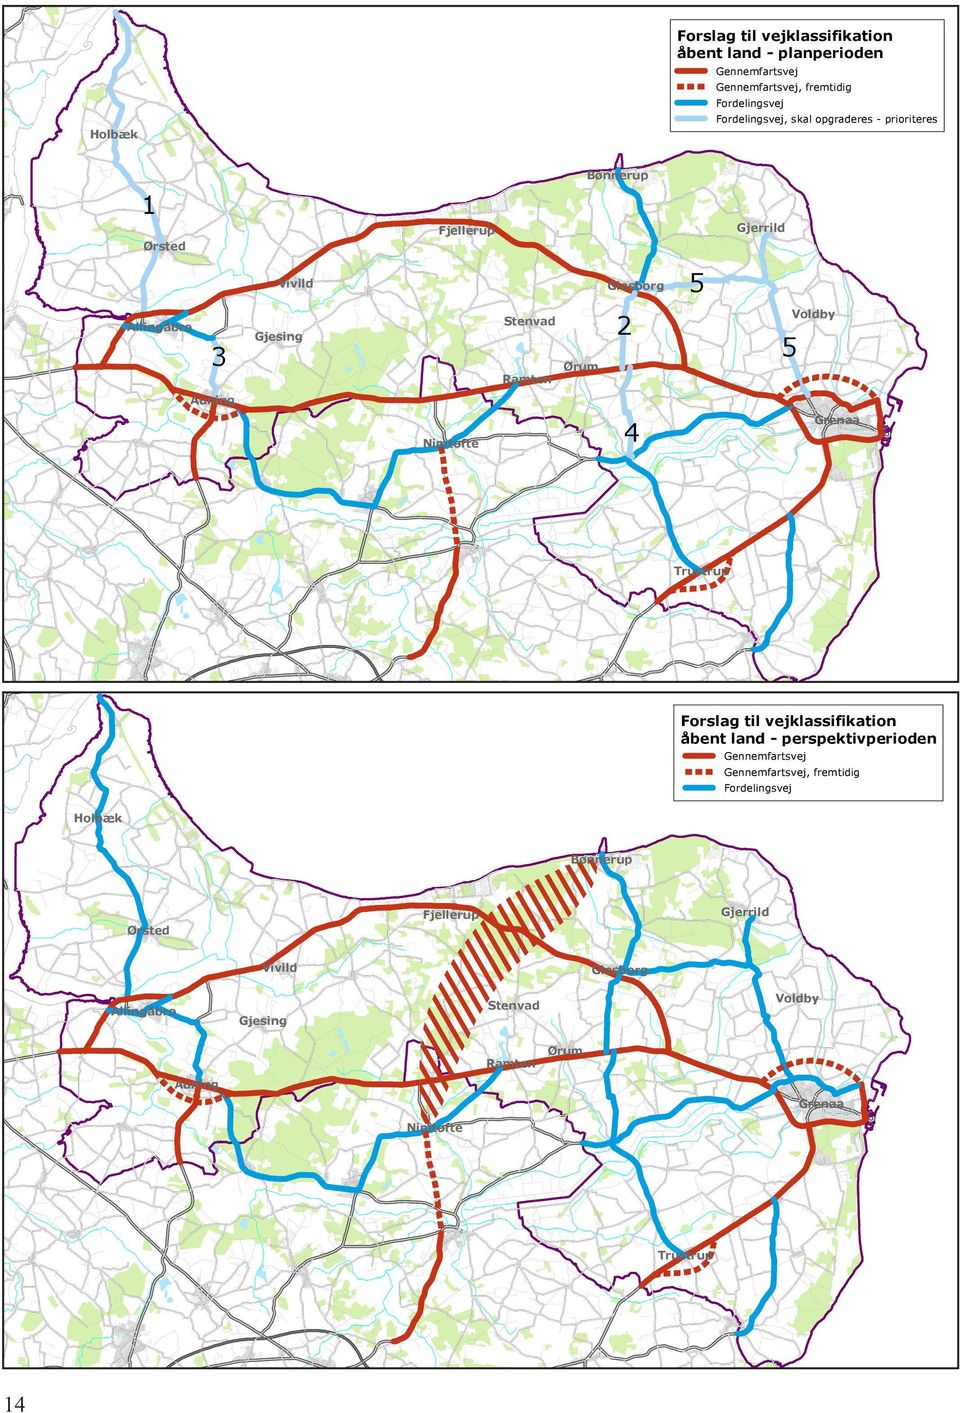 Auning Grenaa 4 Nimtofte Trustrup Forslag til vejklassifikation åbent land - perspektivperioden Gennemfartsvej Gennemfartsvej, fremtidig